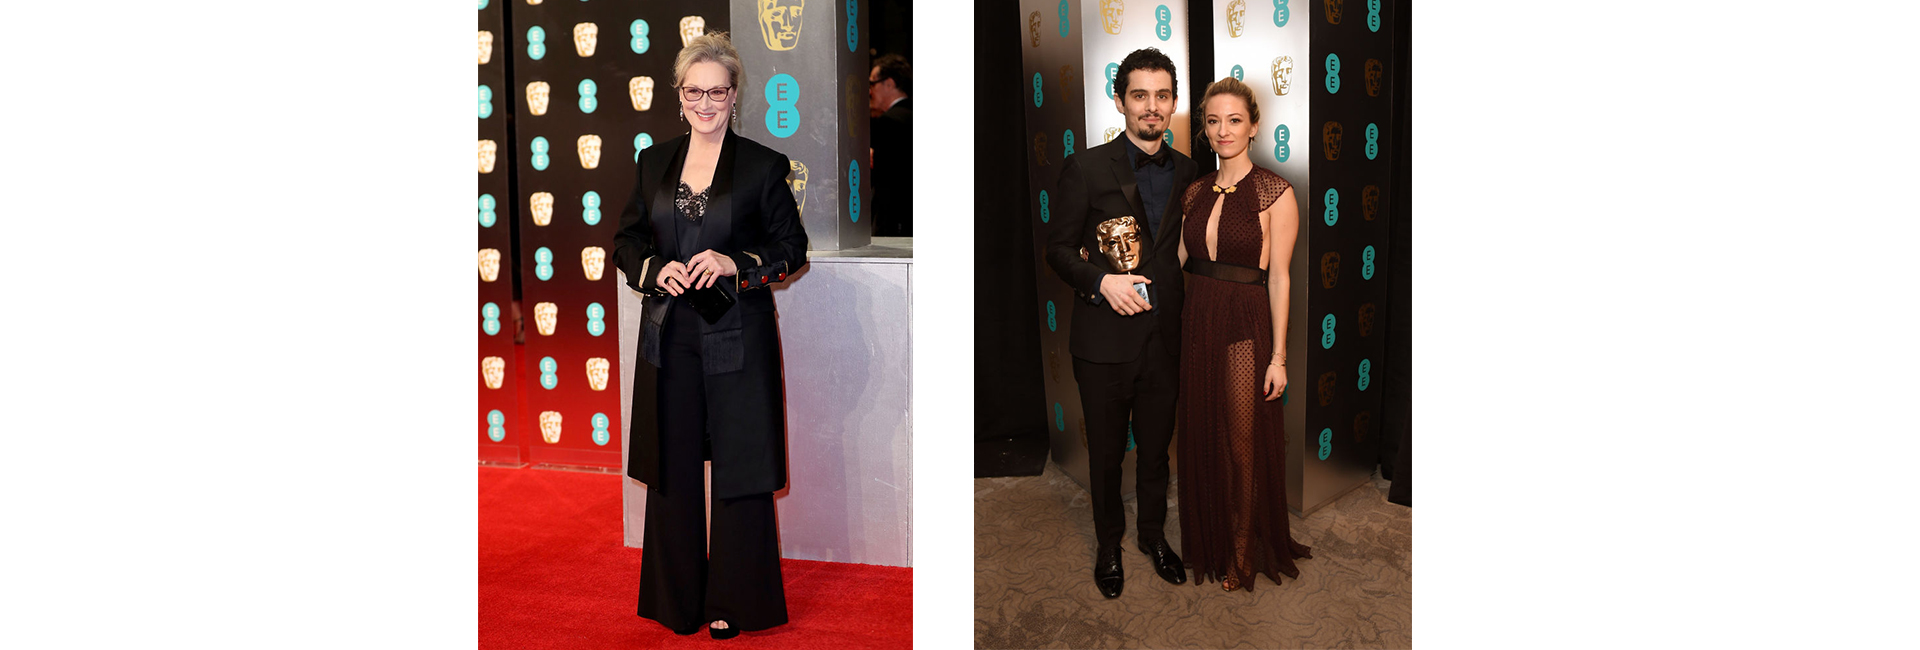 BAFTA 2017: итоги и главные моменты церемонии (фото 2)